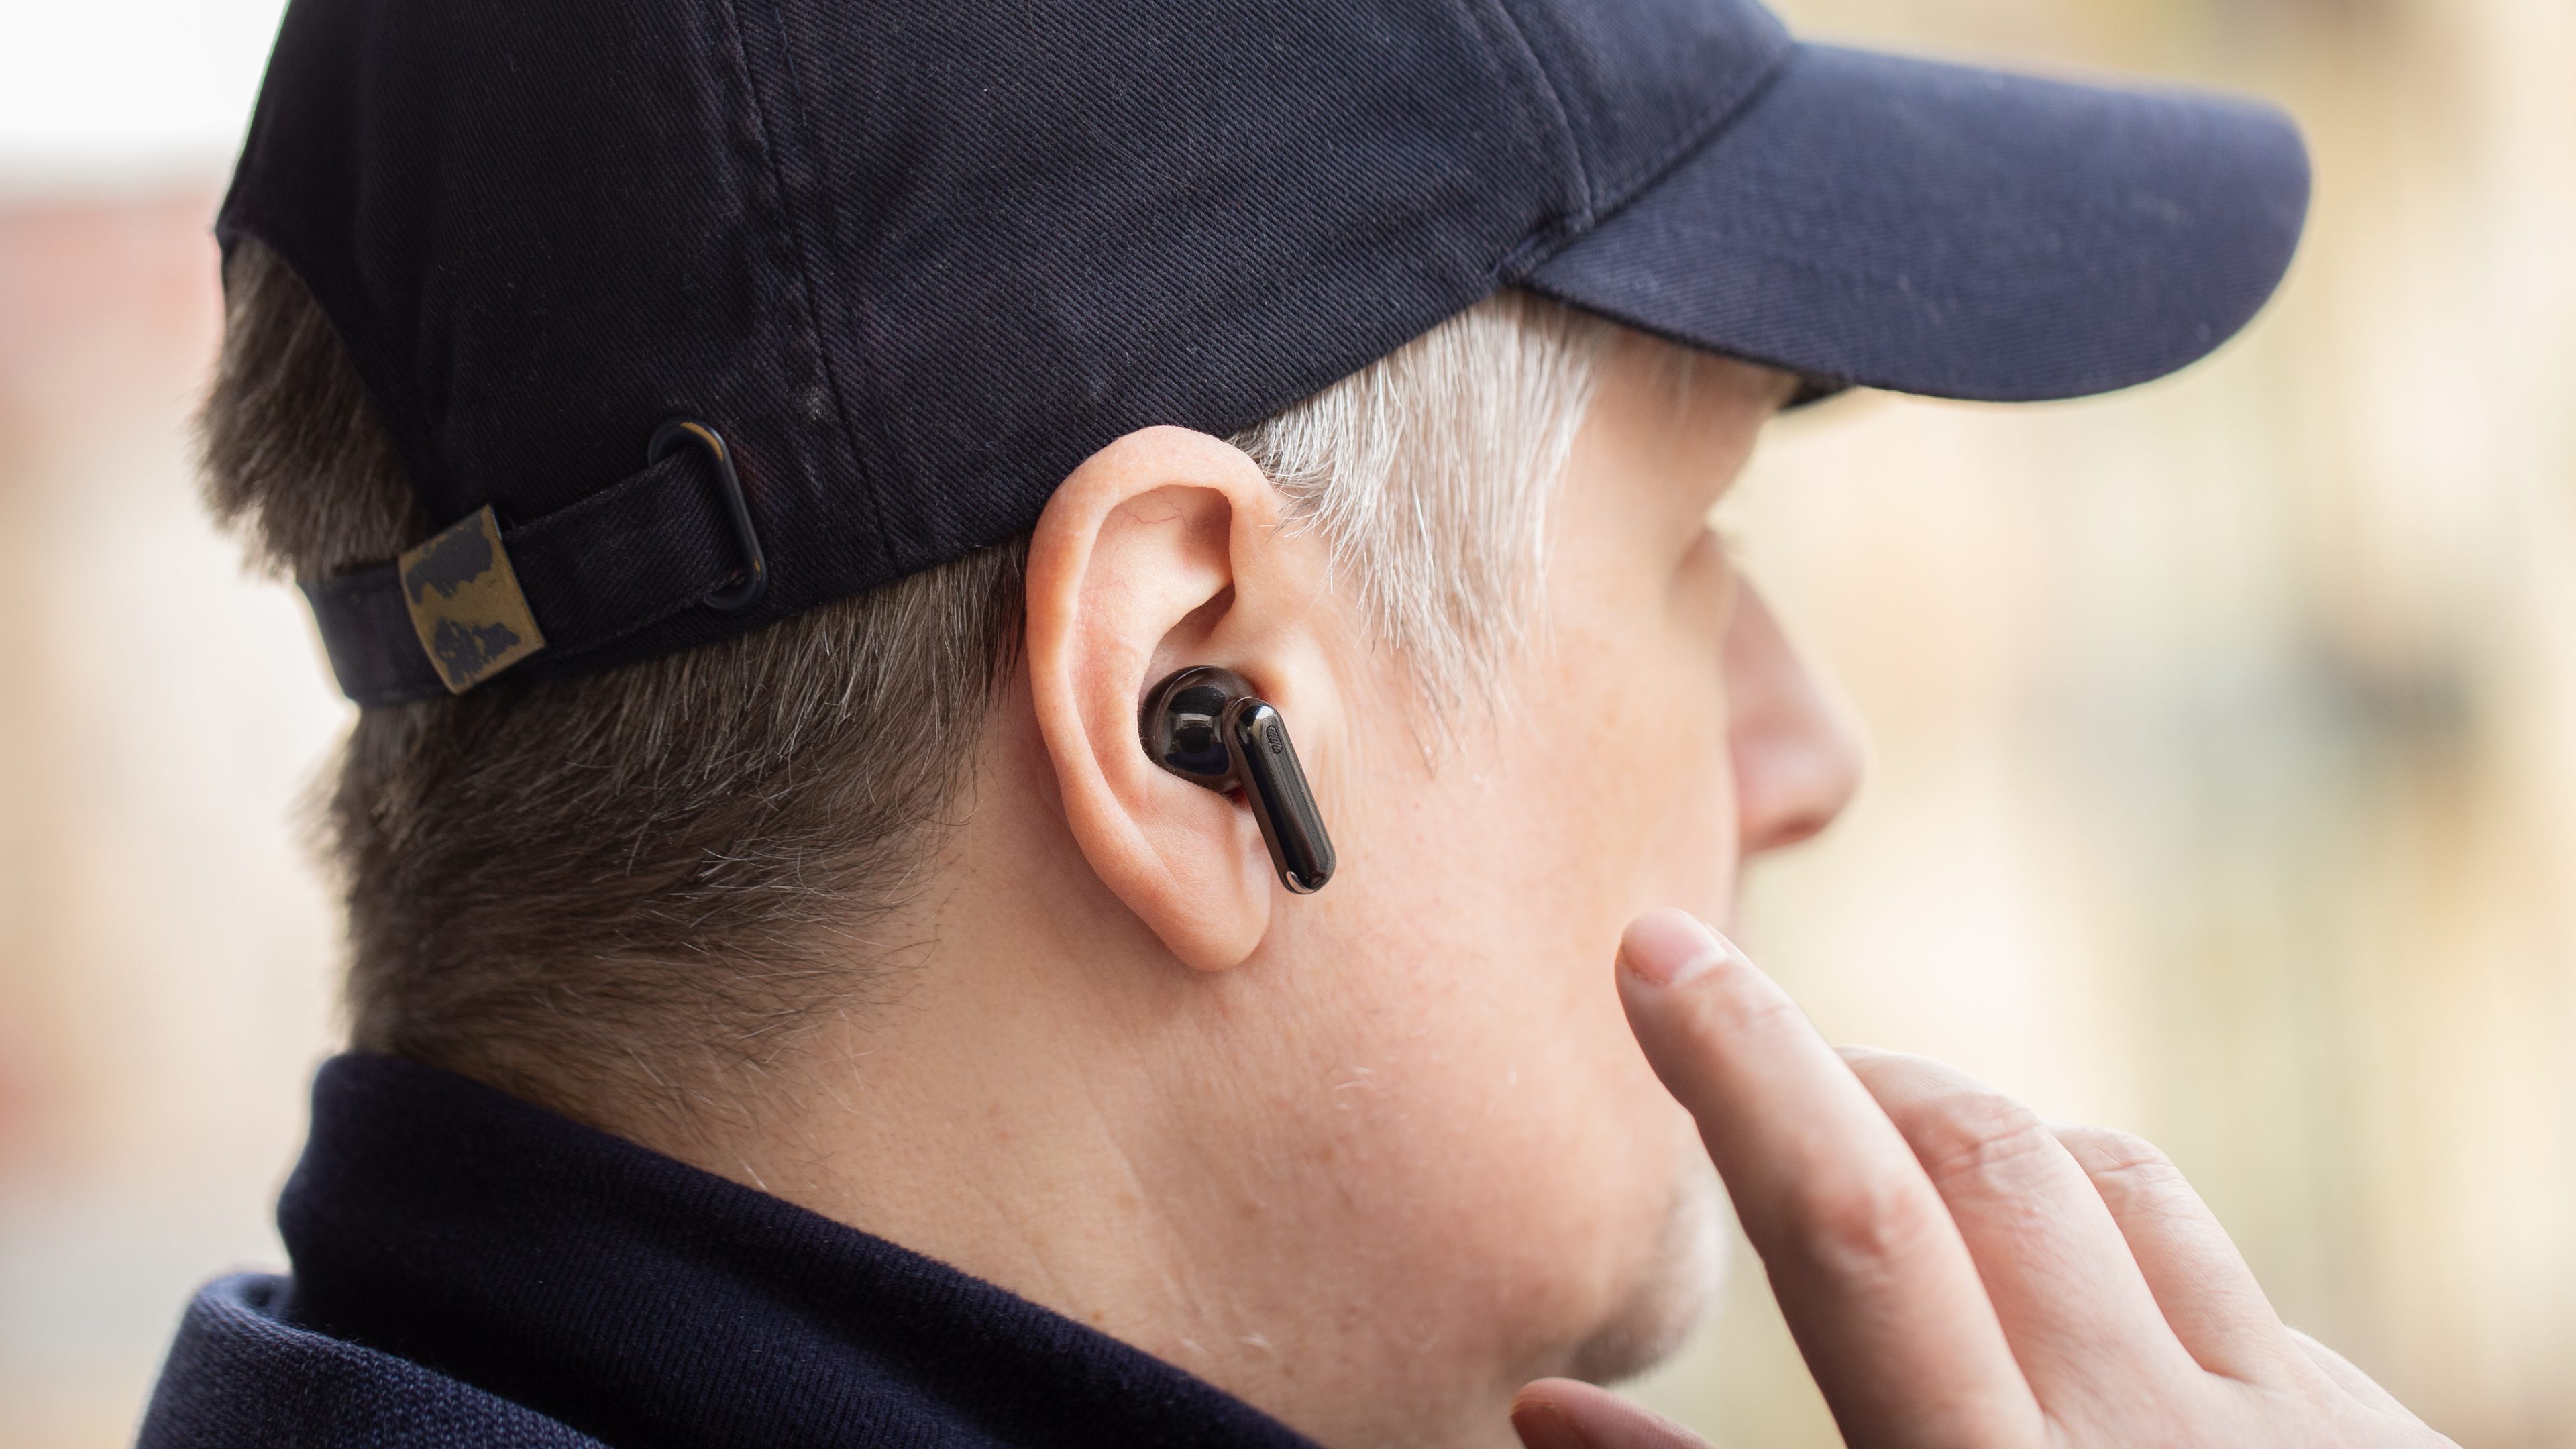 AirPods 2 : Les écouteurs sans fil Apple à saisir à moins de 90€ - Le  Parisien